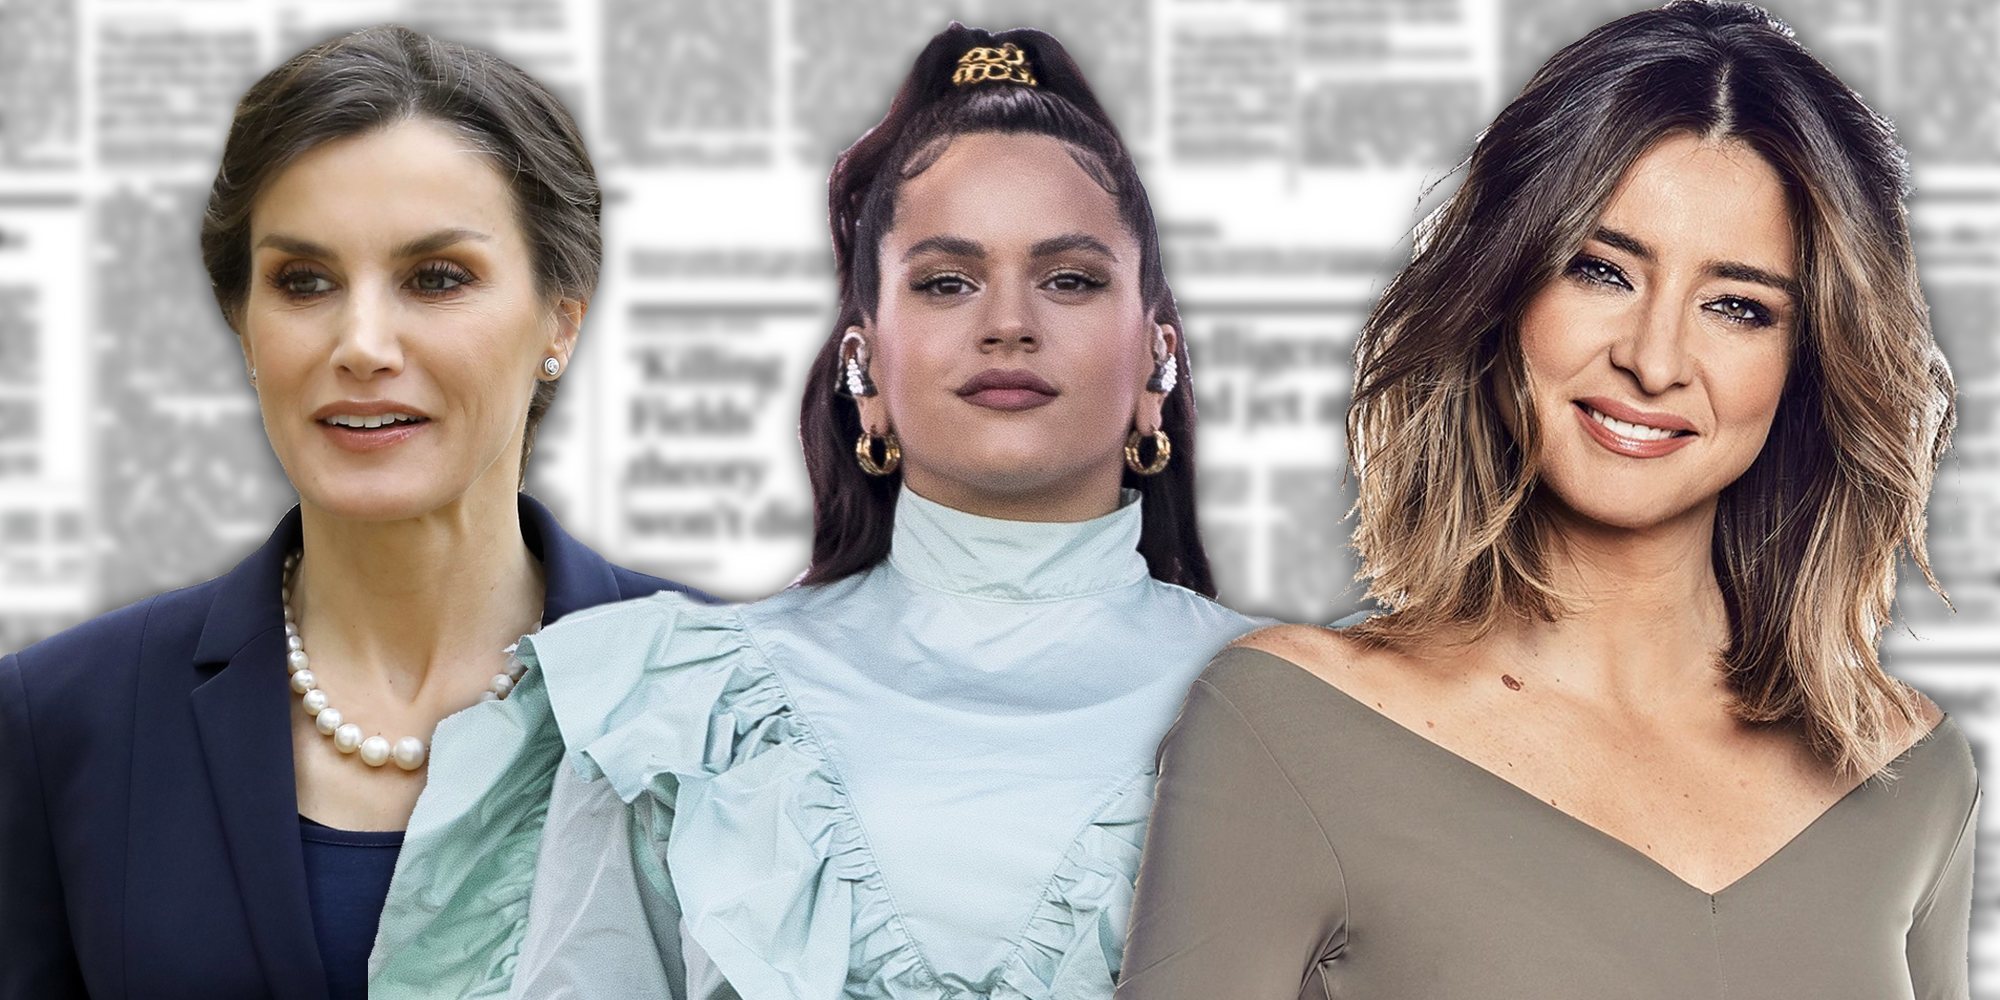 La Reina Letizia, Rosalía, Sandra Barneda... entre las personas más influyentes de este 2020 según Forbes